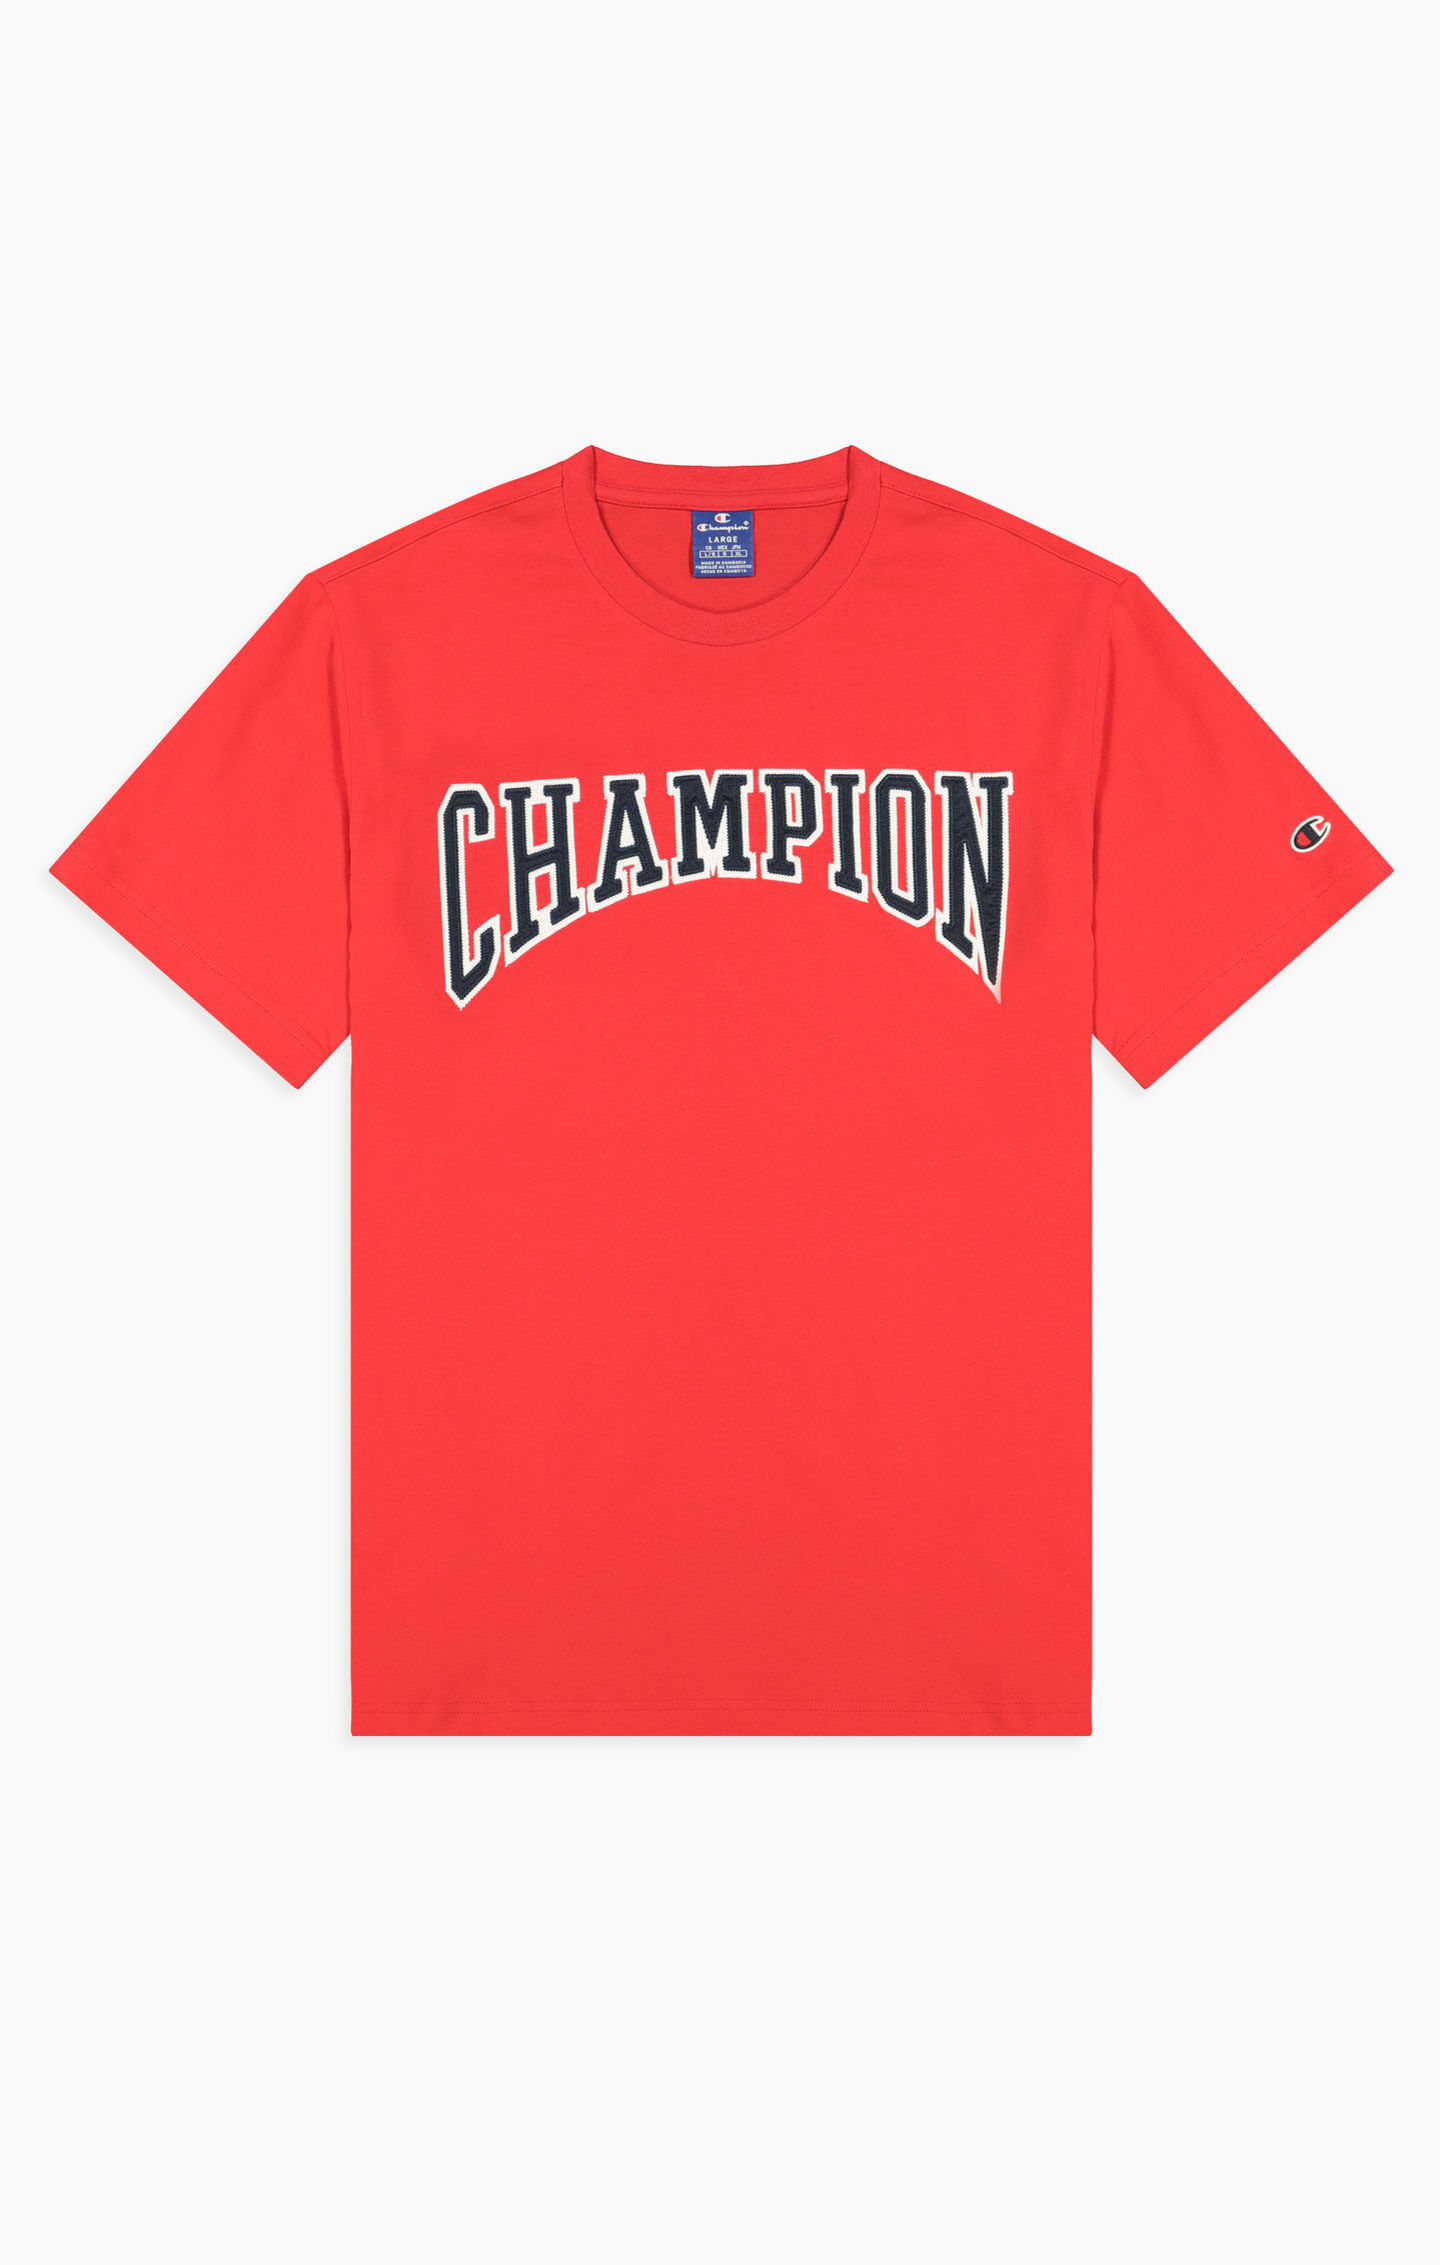 T-Shirt Champion Shop Herren Crewneck - Wendeln Mode